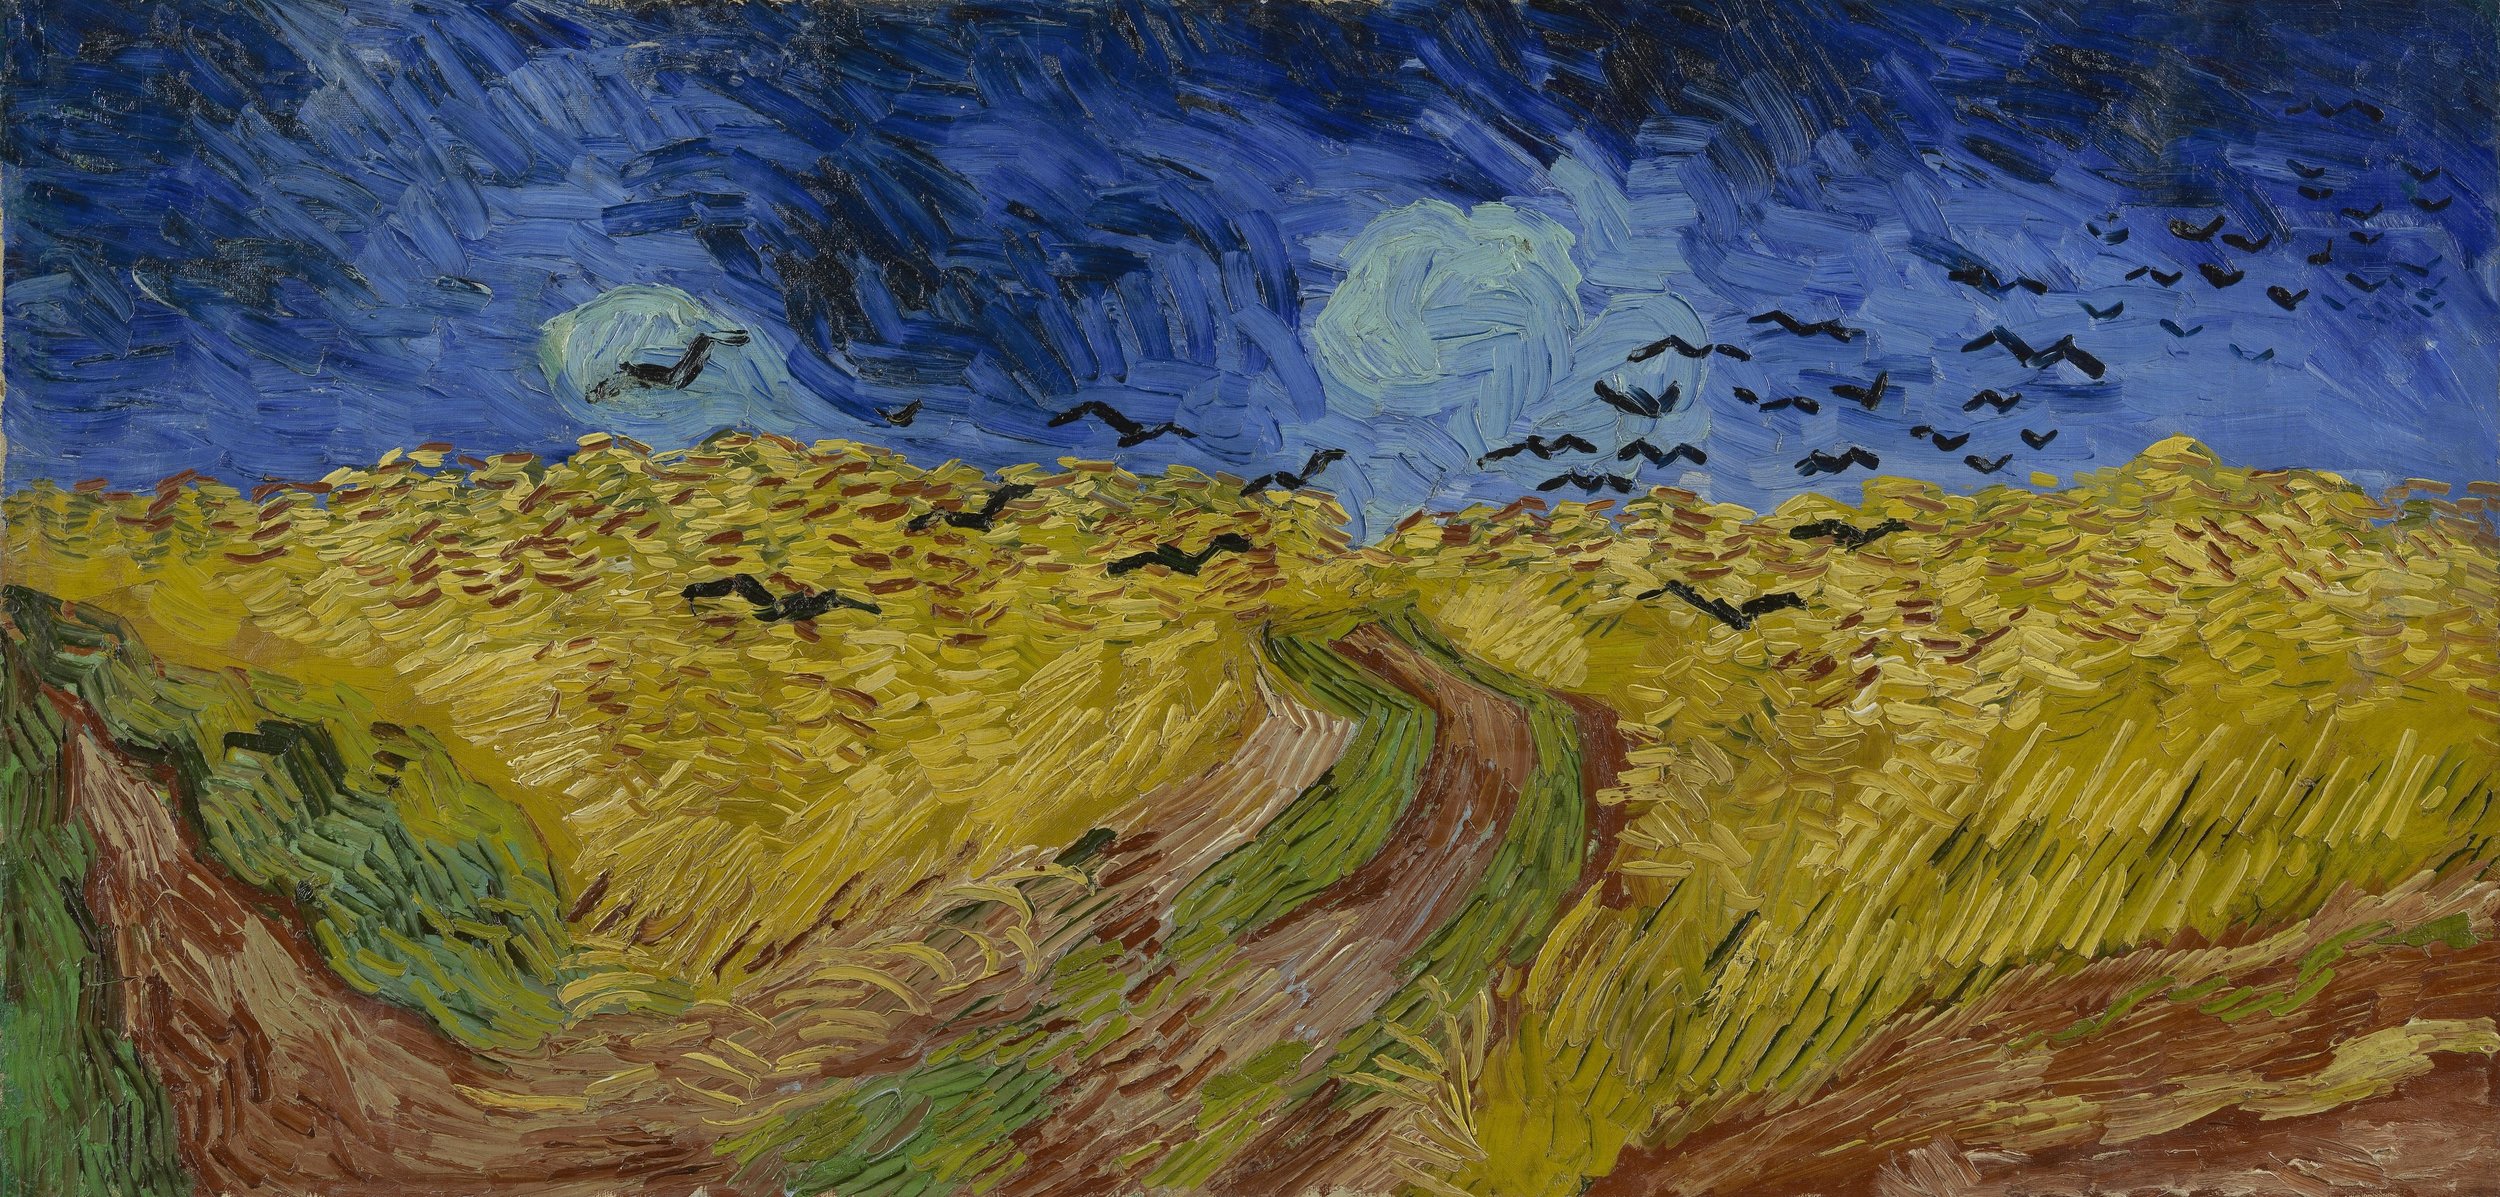 Vincent Van Gogh, Wheatfield with Crows (Copy) (Copy)